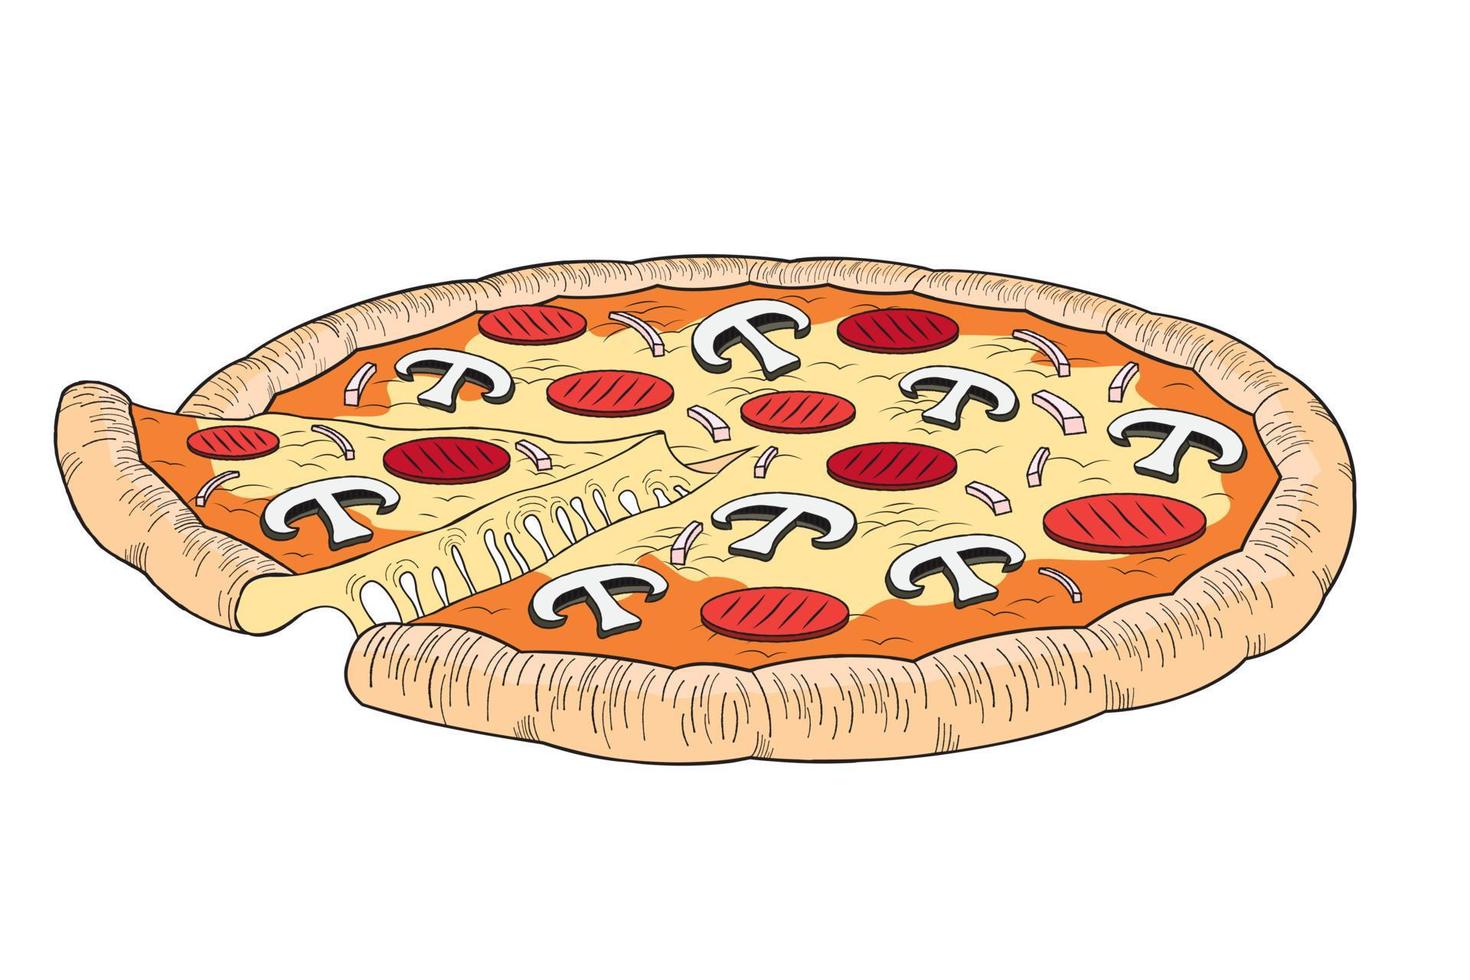 pizza met peperoni en champignons vector